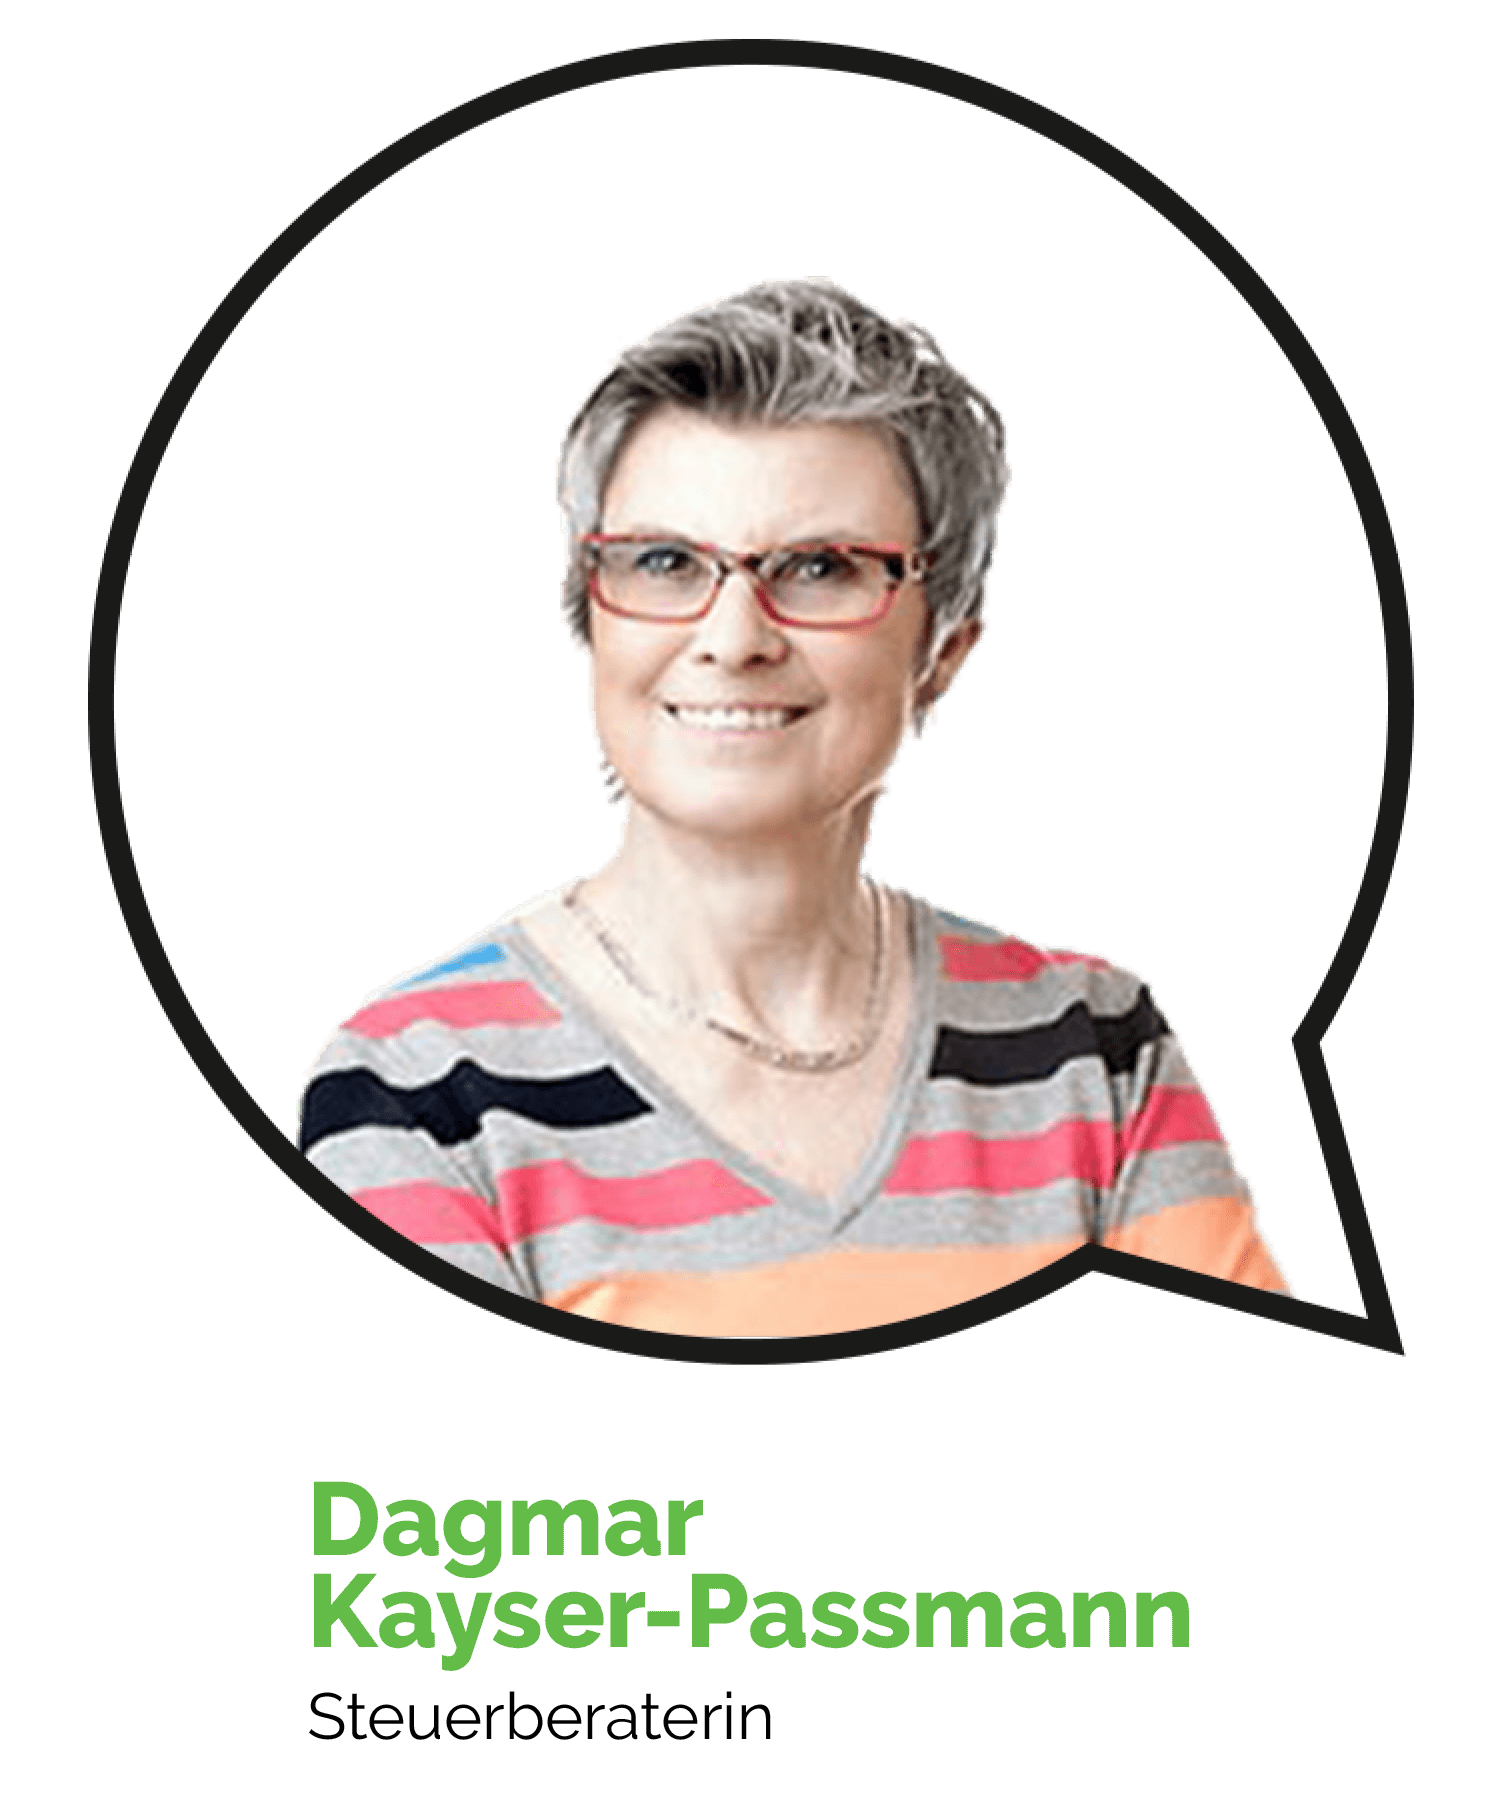 Dagmar Kayser-Passmann